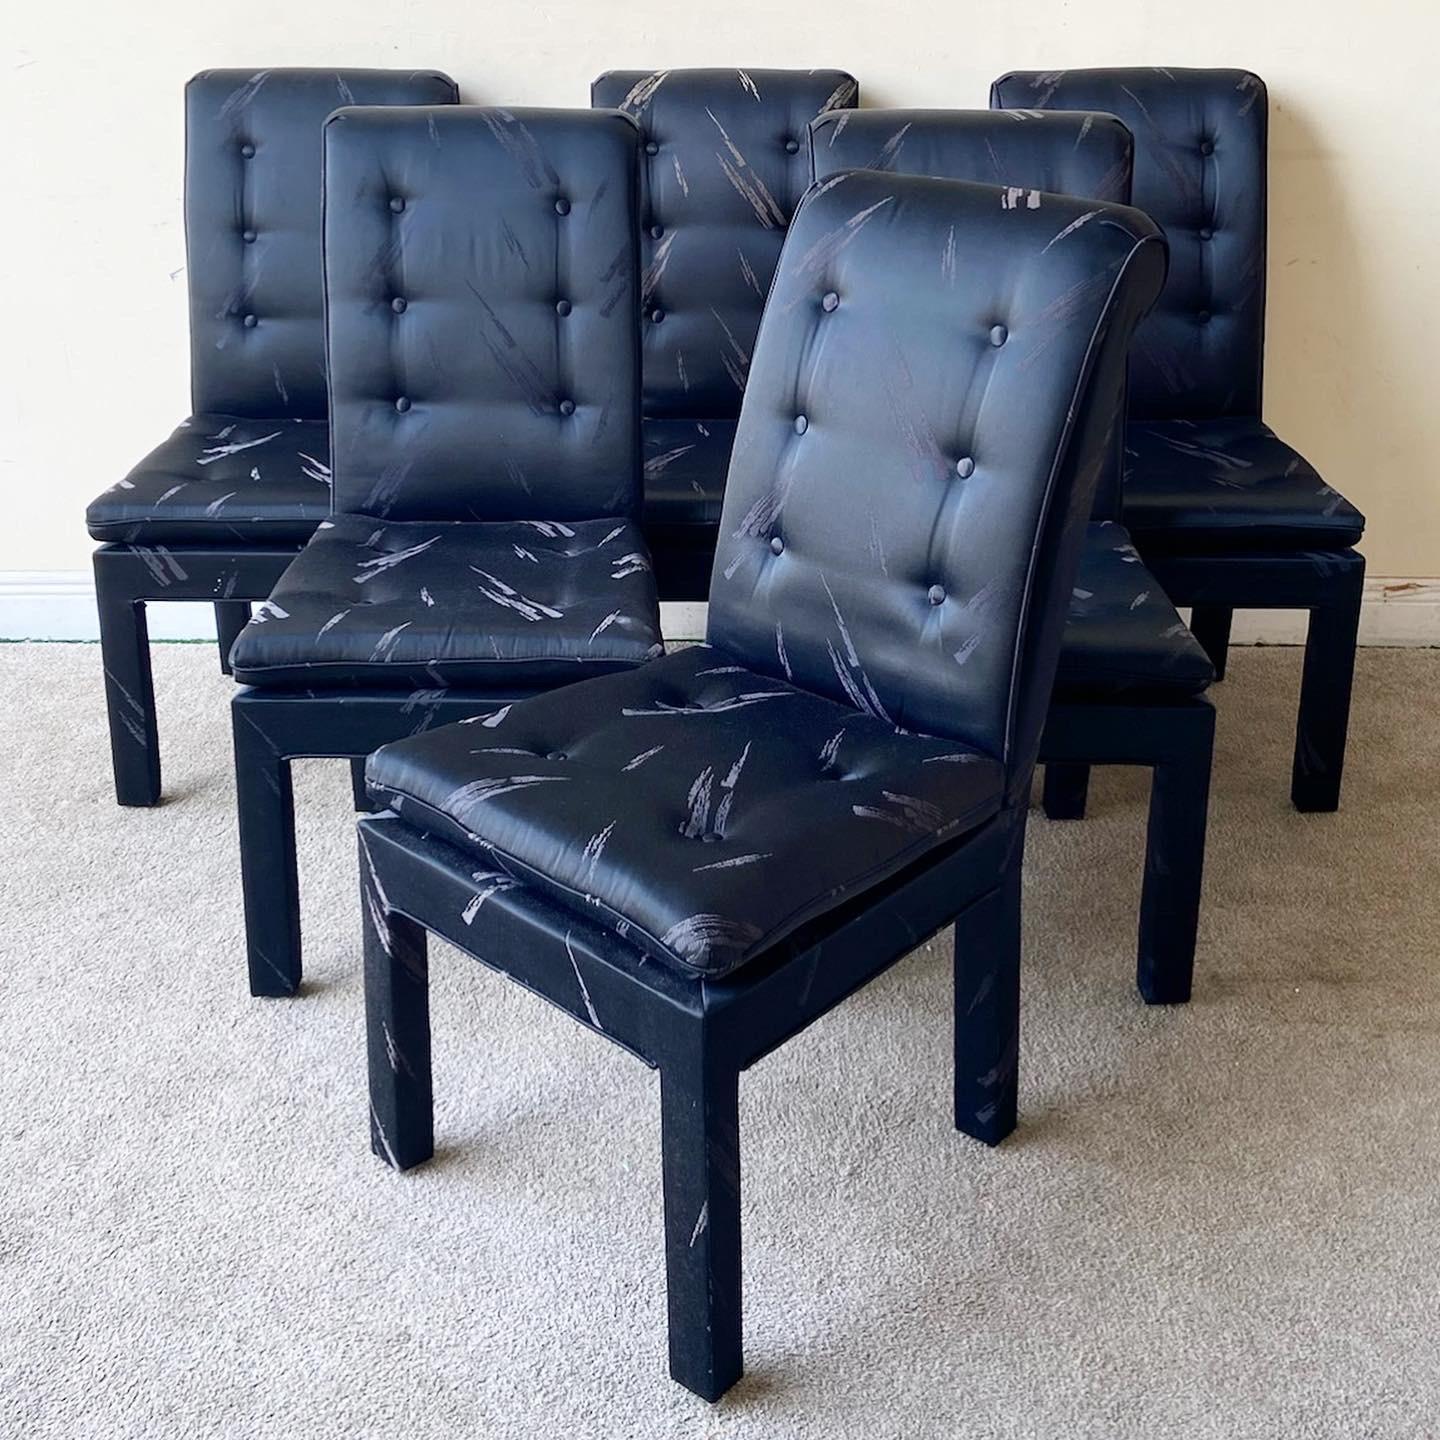 Etonnant ensemble de 6 chaises Parsons postmodernes. Chacun d'entre eux est doté d'un tissu noir sur noir et de dossiers touffus.
 